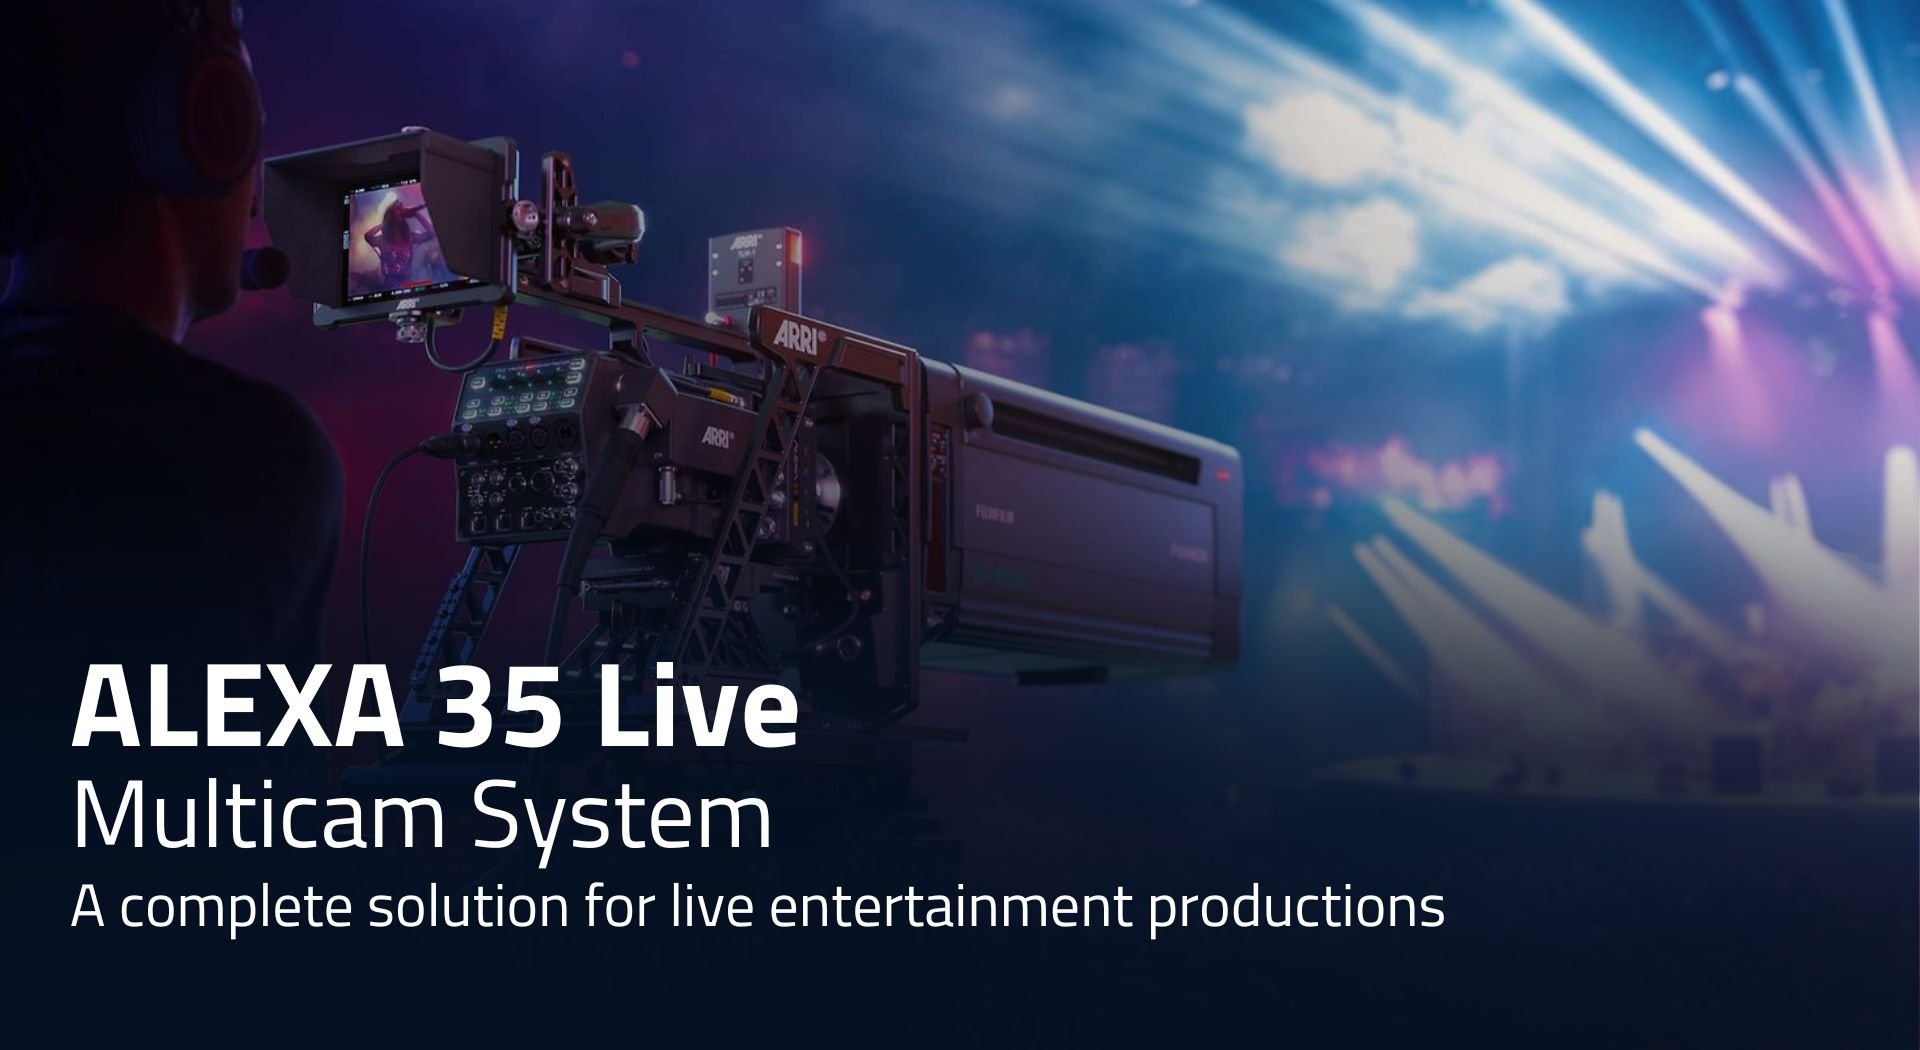 ALEXA 35 Live Multicam System